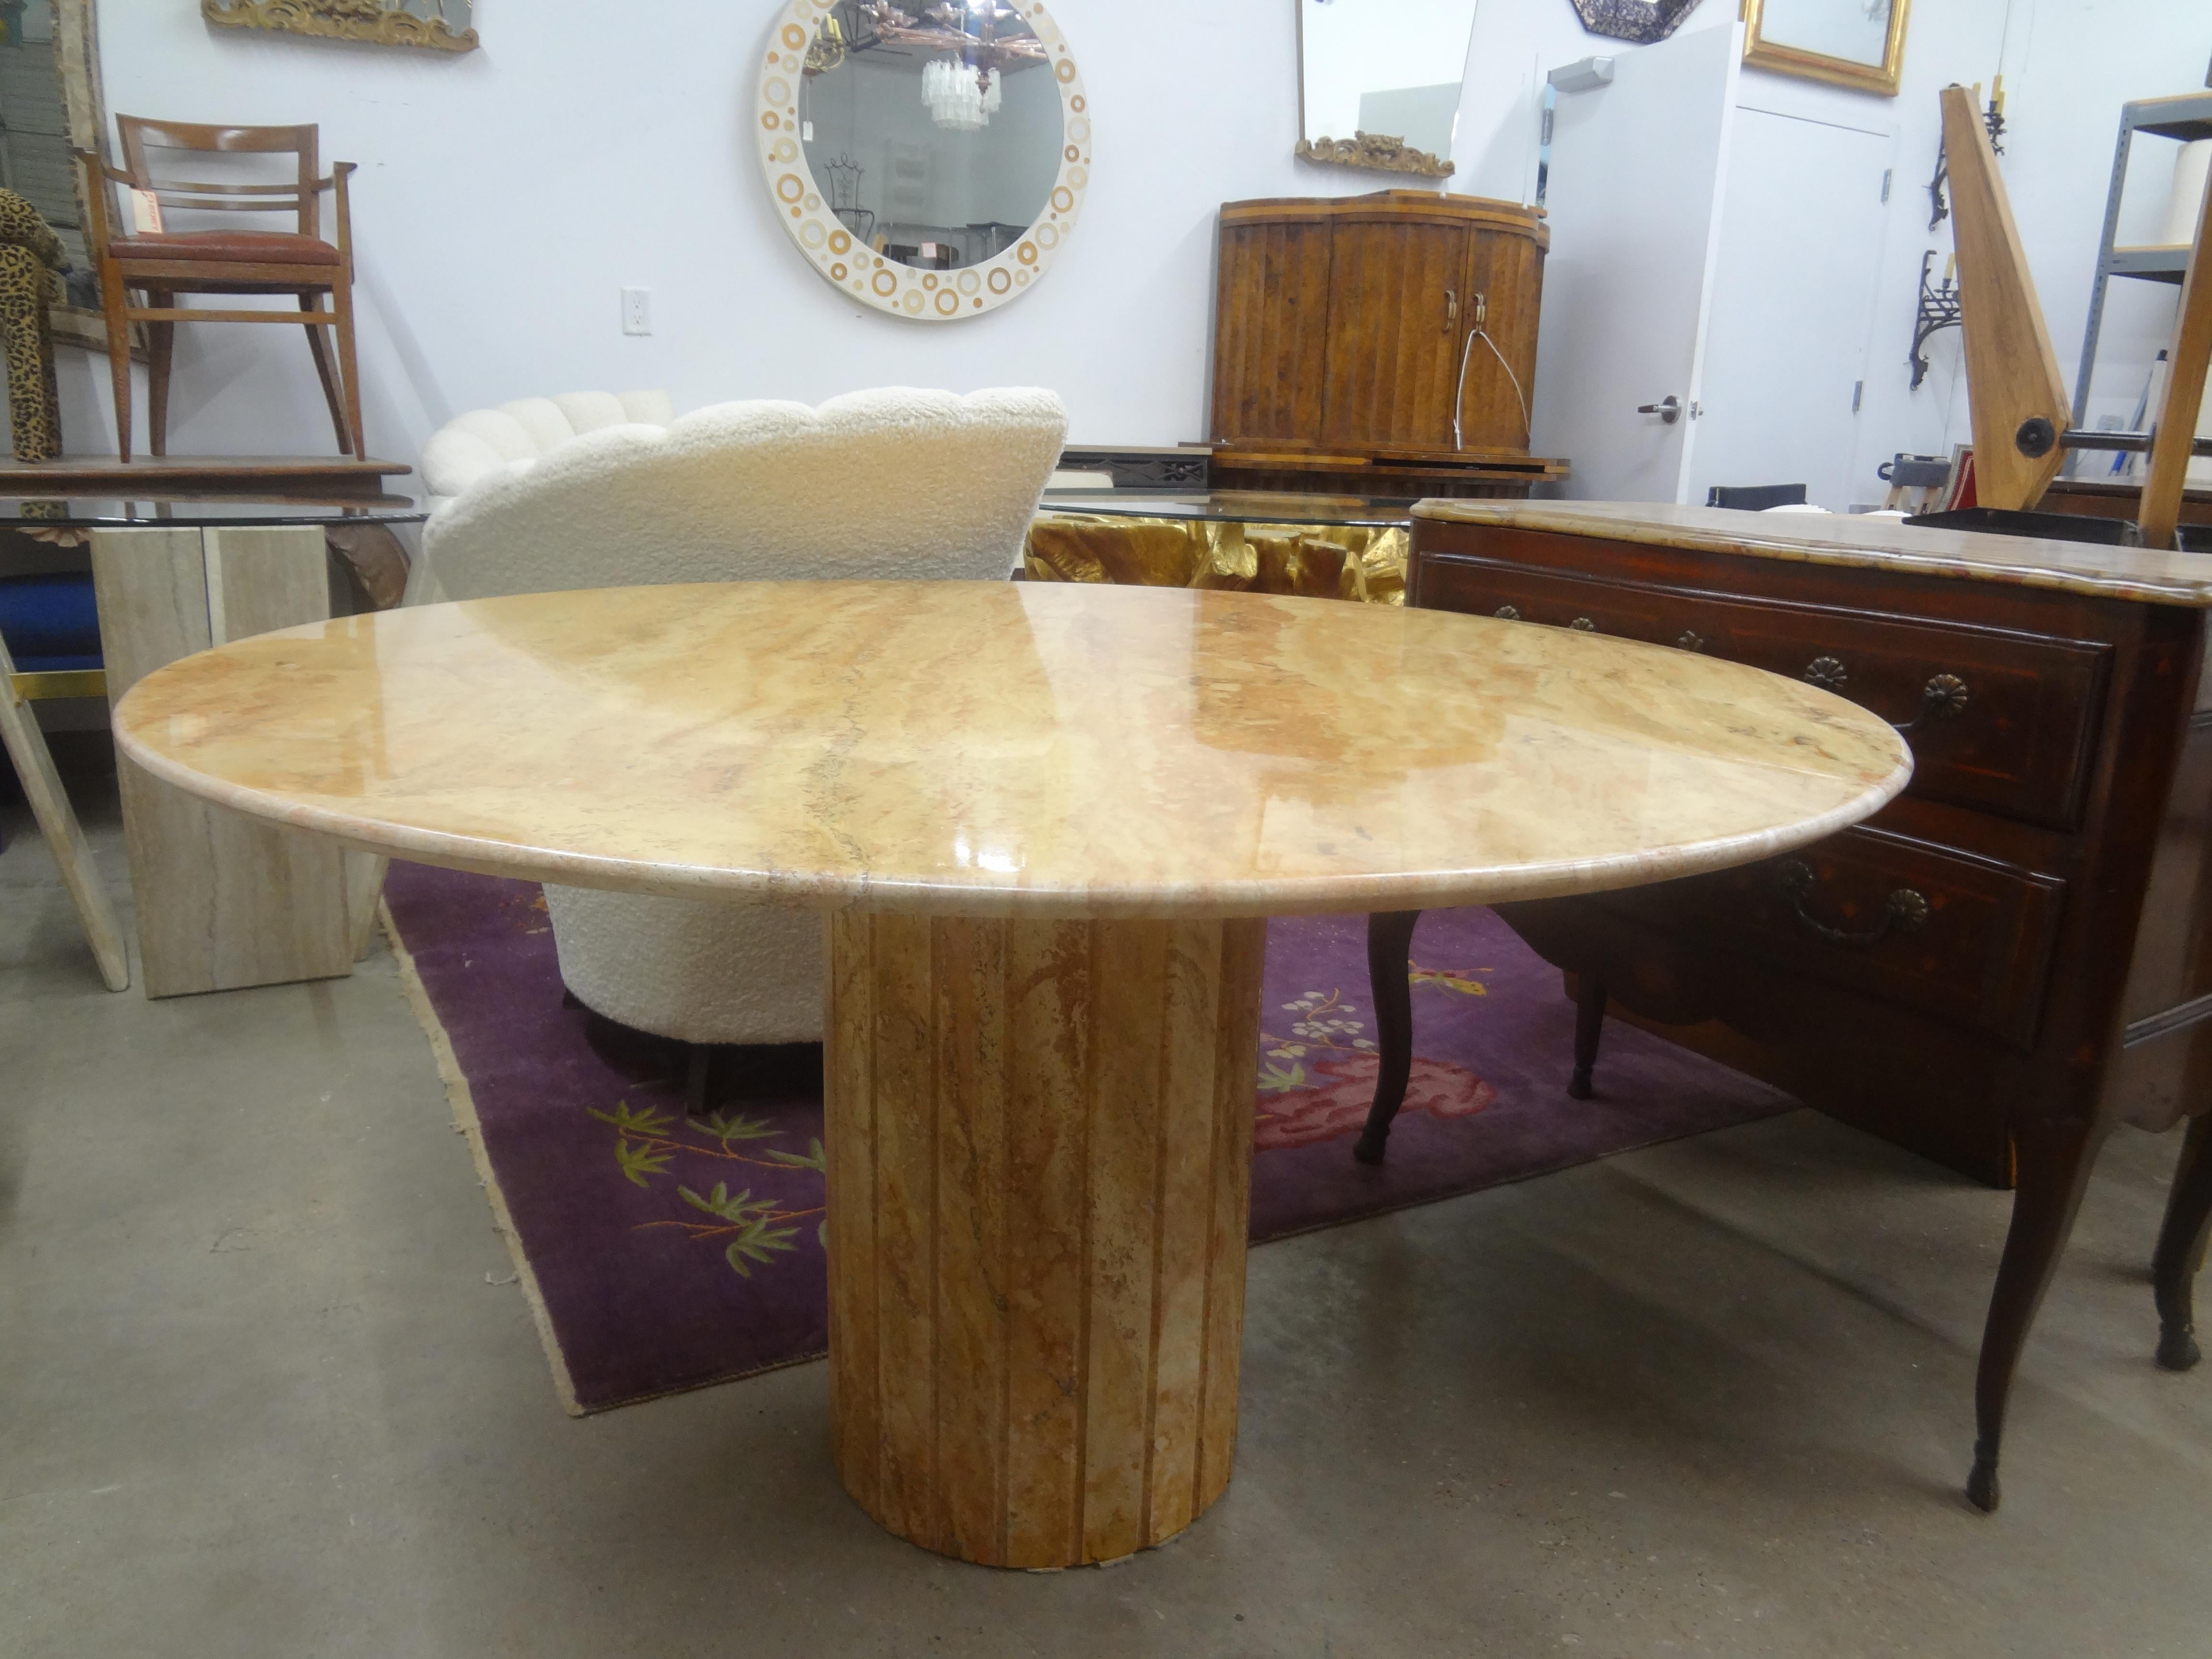 Centre de table en marbre italien post-moderne.
Cette grande table en marbre de style italien Mario Bellini (51 pouces) peut être utilisée comme table centrale ou table à manger.
Marbre de couleur très inhabituelle.
Spectaculaire !